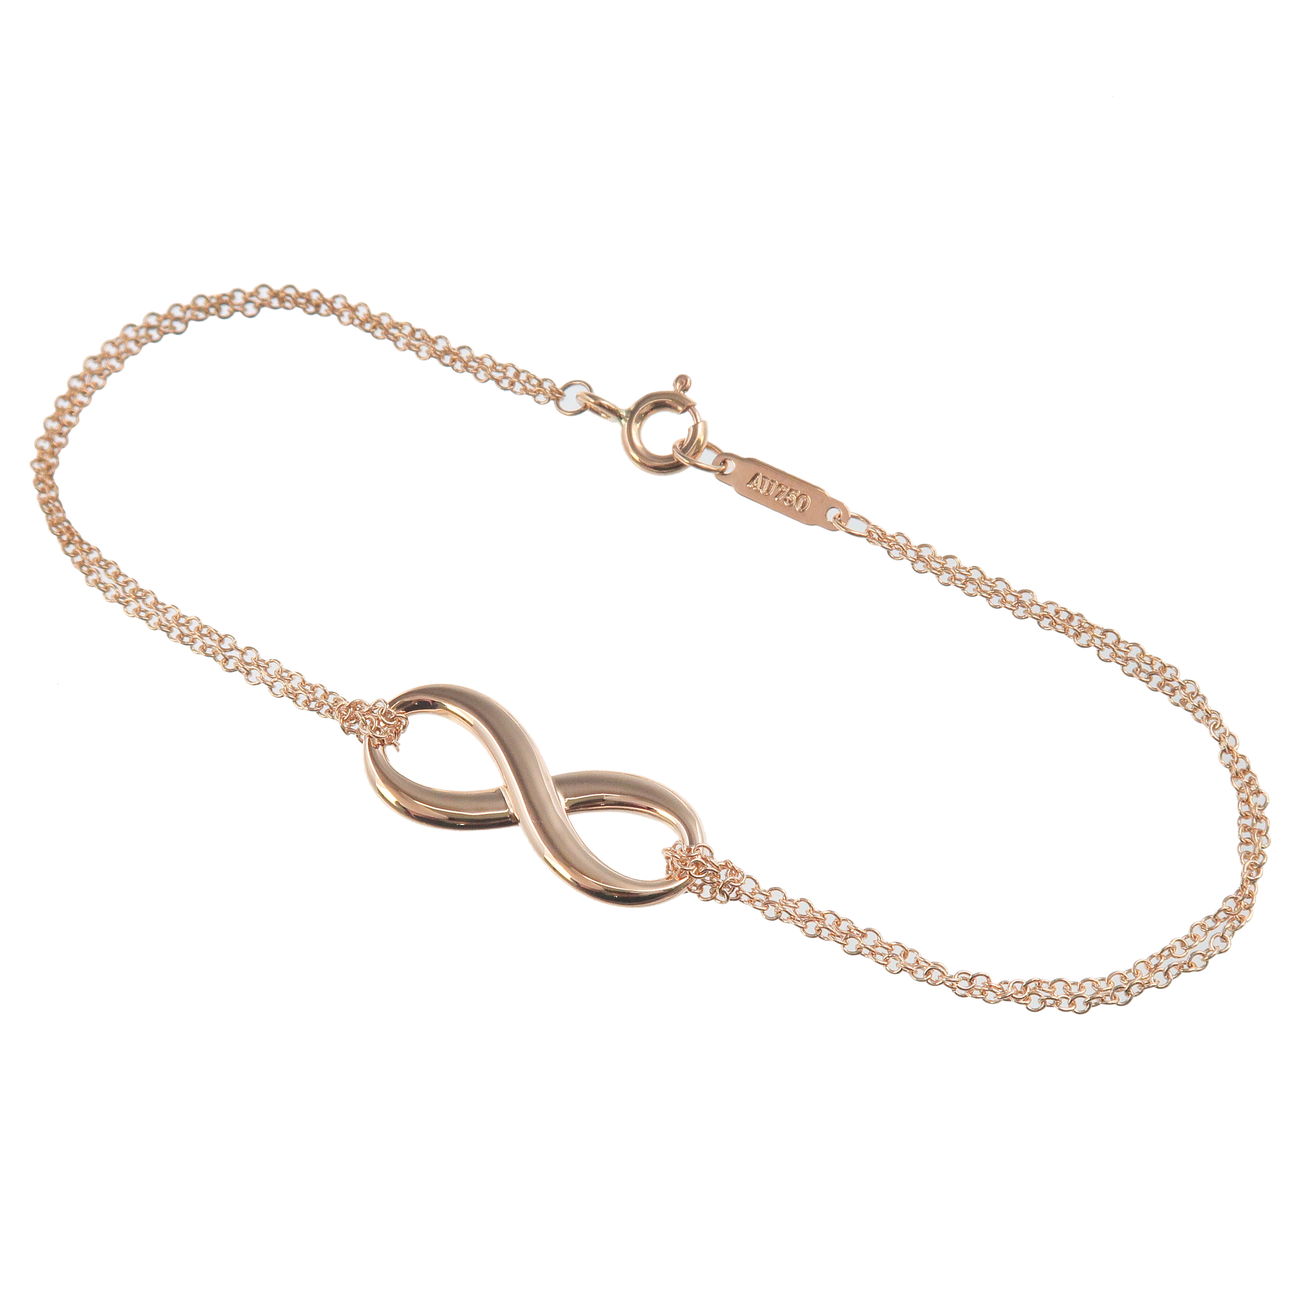 Tiffany&Co.-Tiffany-Infinity-Bracelet-K18PG-750PG-Rose-Gold